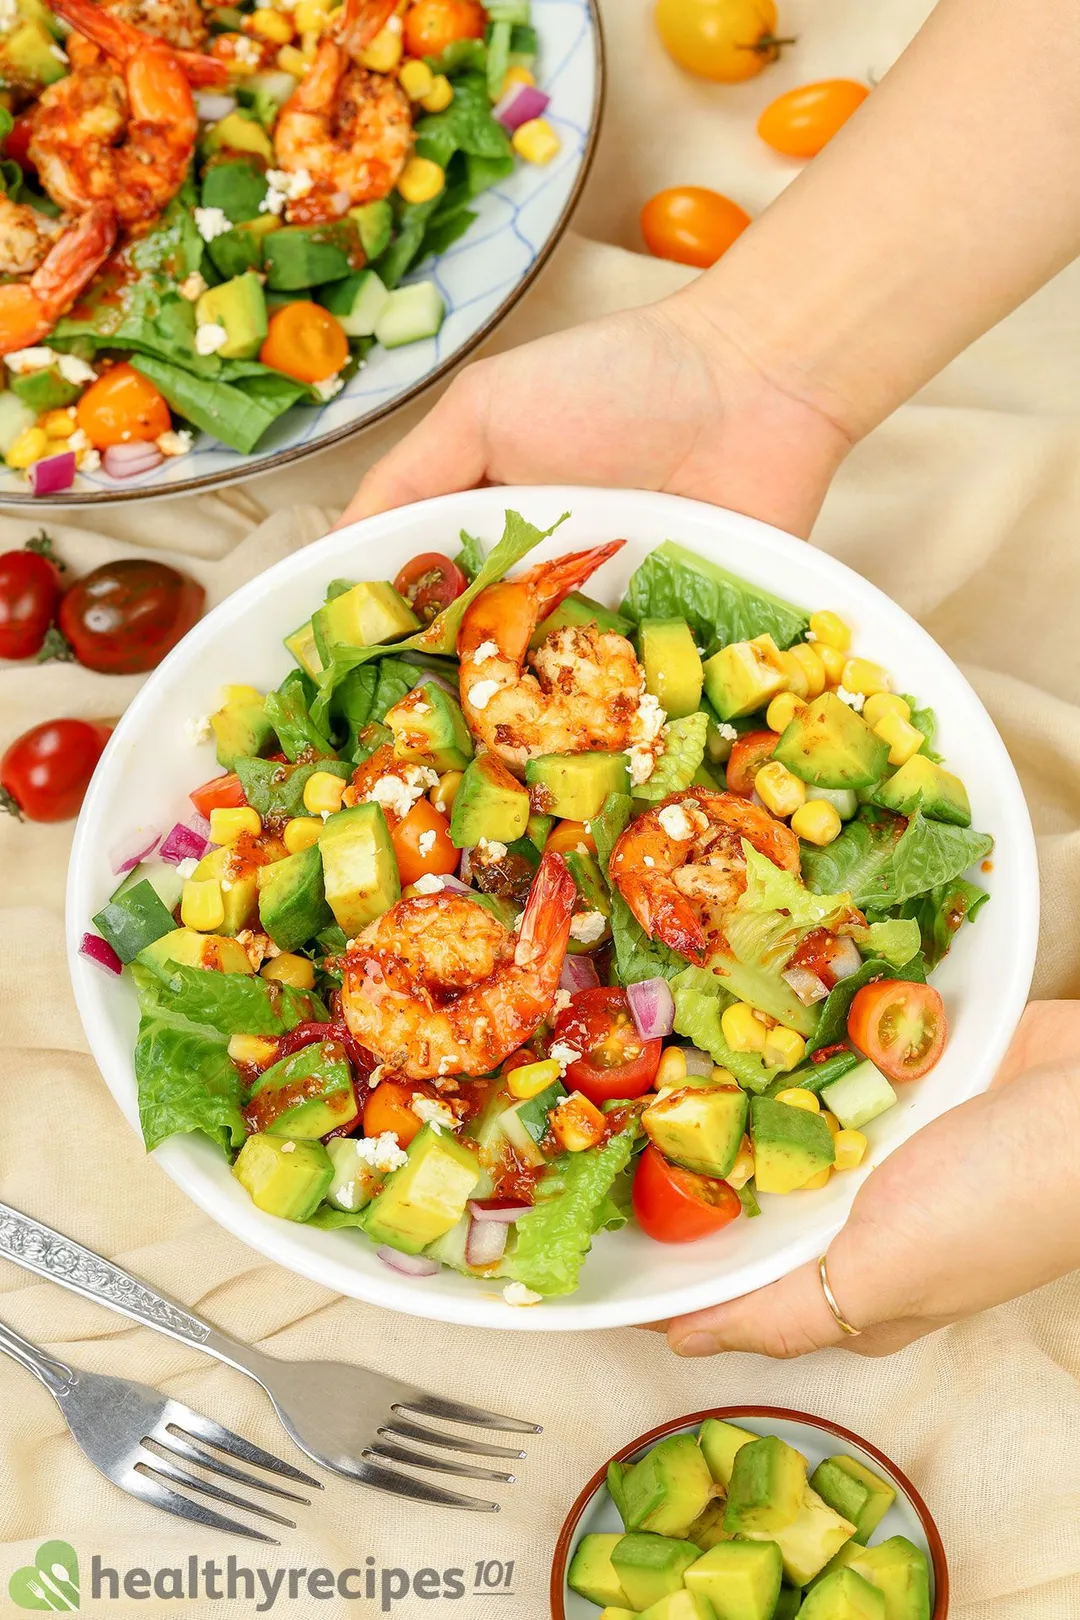 Is Shrimp Avocado Salad Healthy